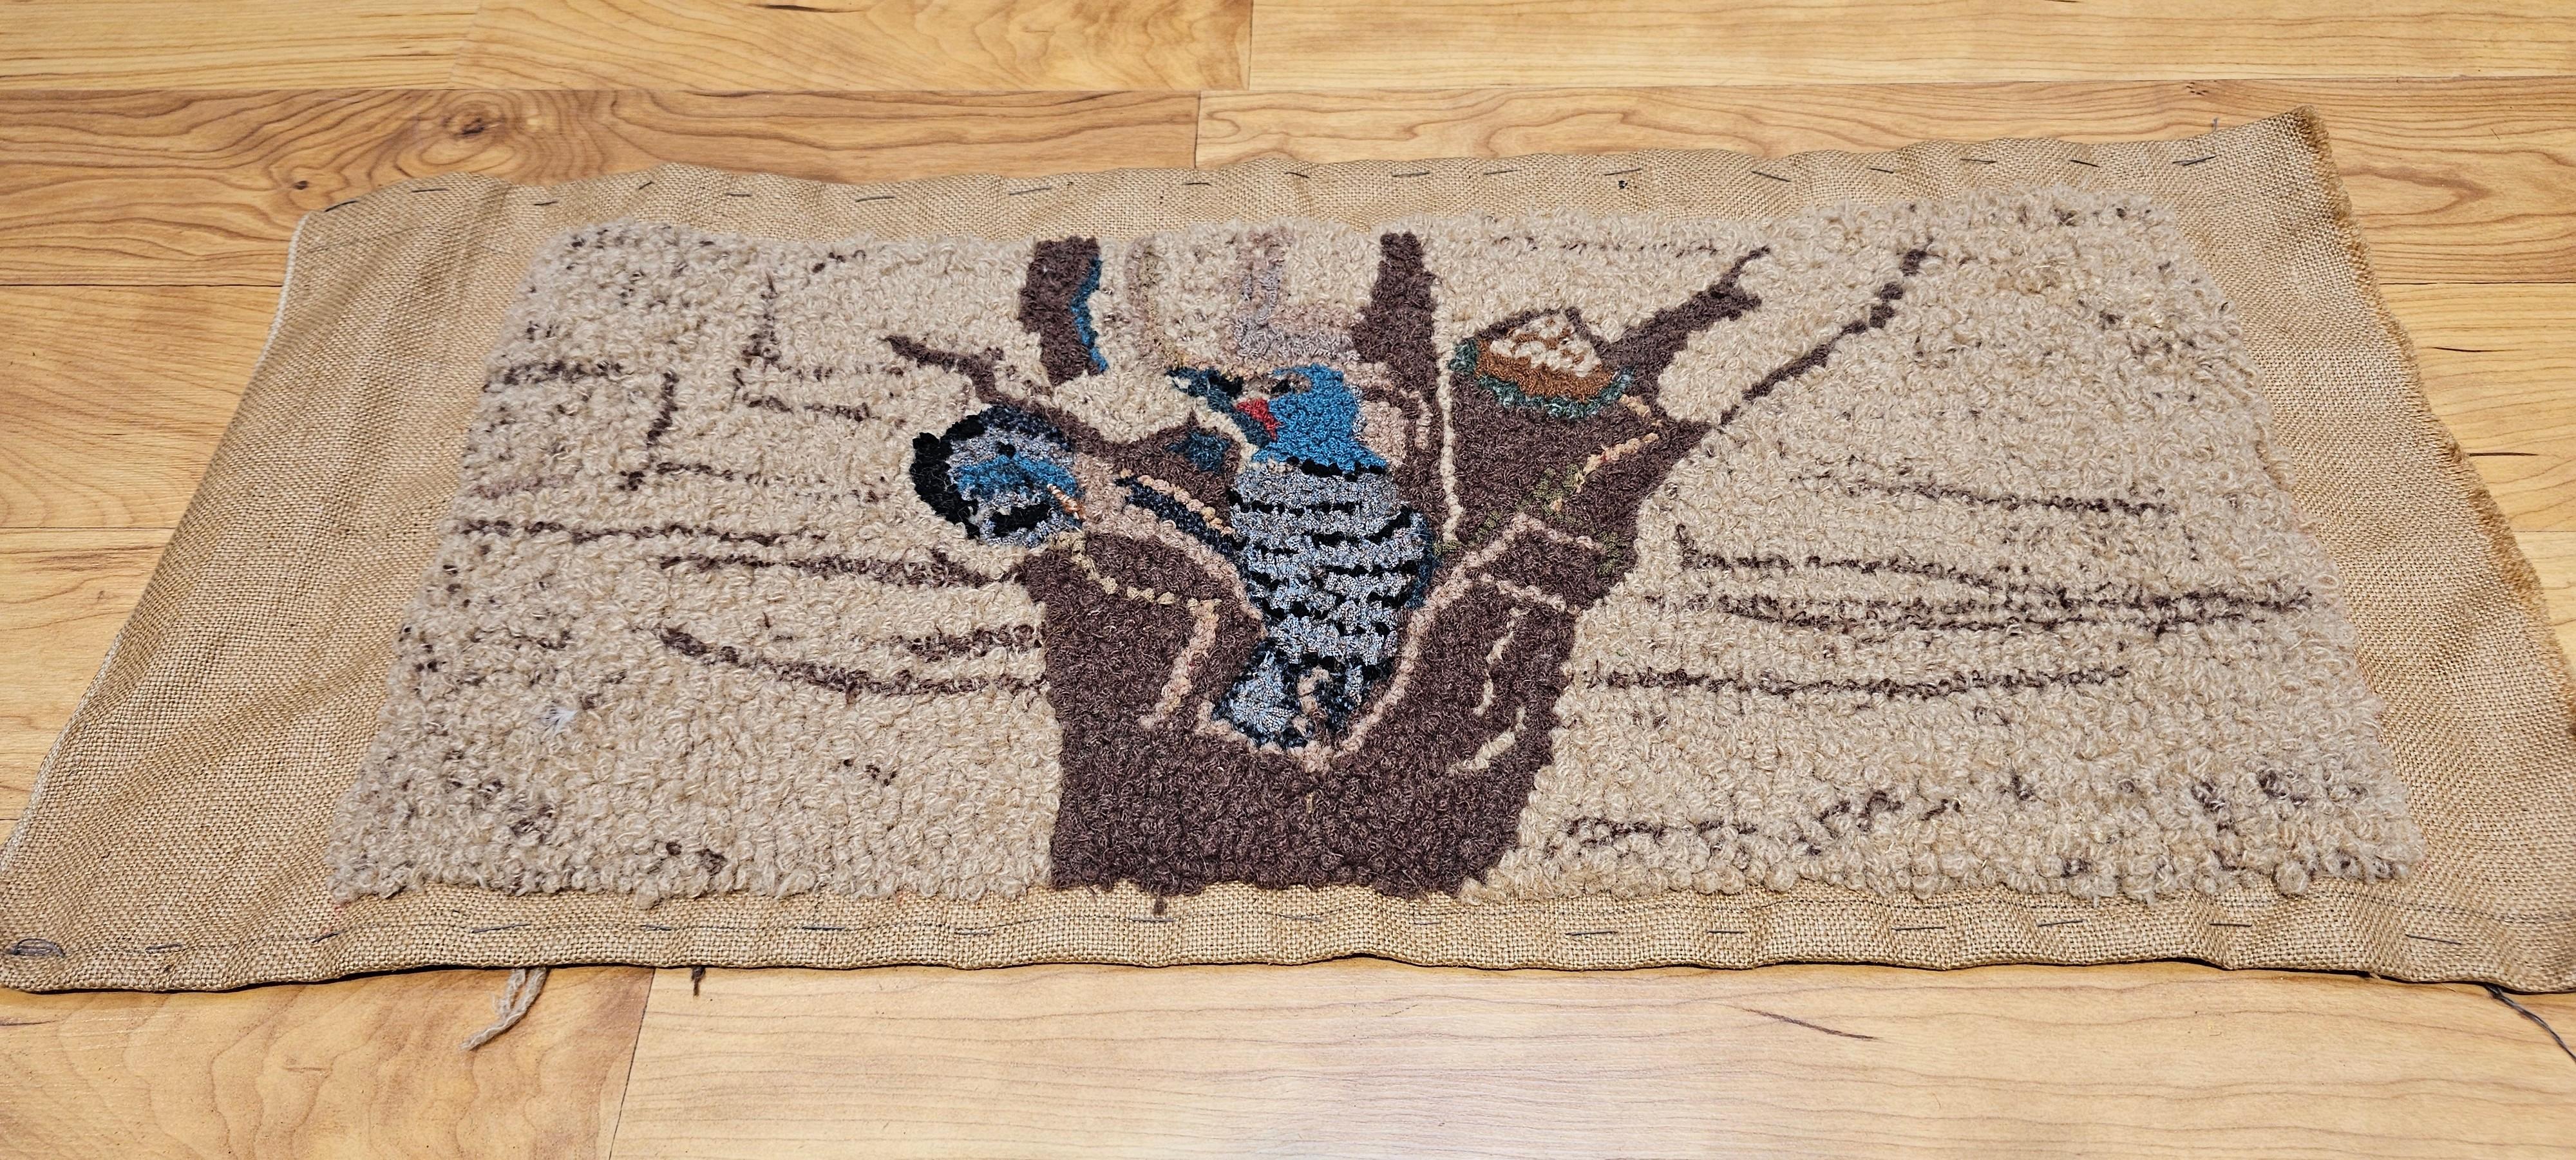 Amerikanischer Vintage-Handknüpfteppich mit einer wunderschönen Darstellung von Vögeln in einem Baumnest.  Der Teppich hat ein reizvolles Design und Farben wie braun, khaki, blau und lavendel.  Wenn man genau hinsieht, kann man eine Vogelmutter